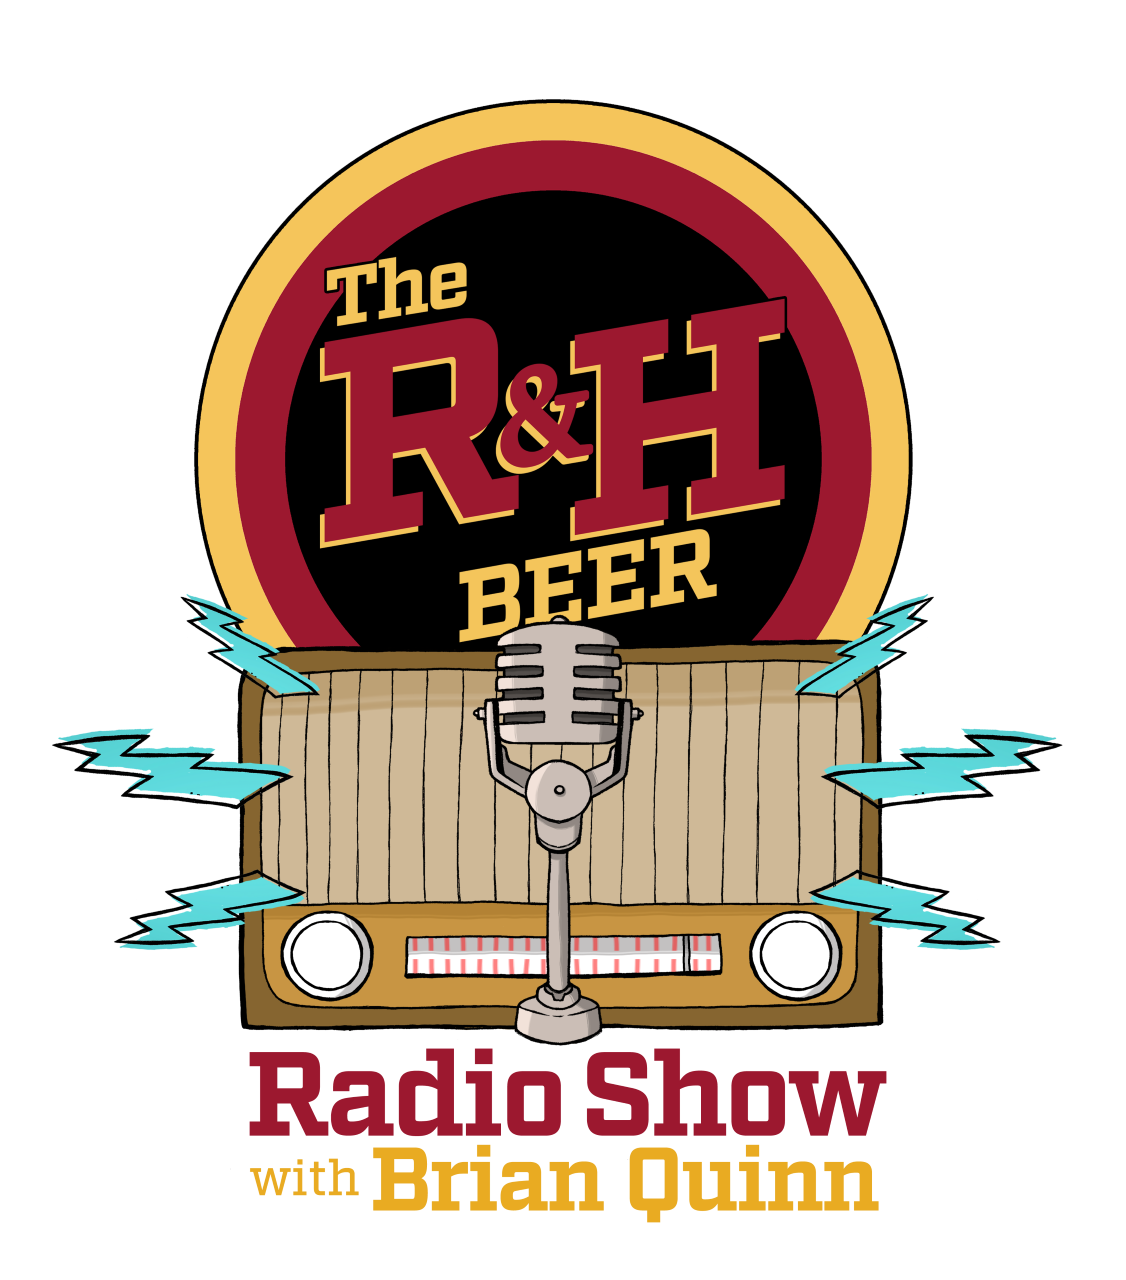 The Rubsam & Horrmann Radio Show with Brian Quinn